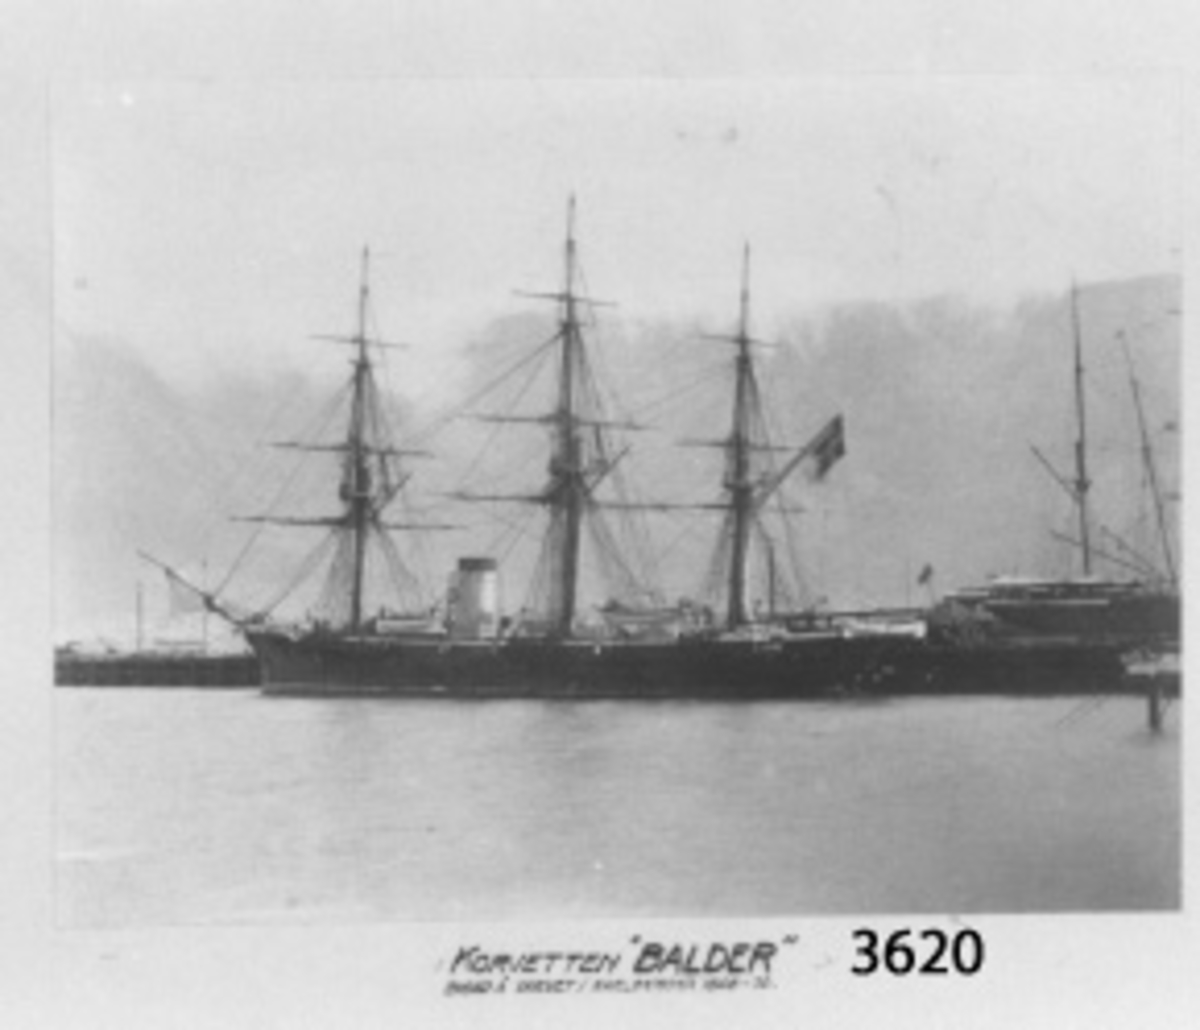 Fotografi, i glas och ram, av korvetten "Balder" förtöjd vi kaj. Fartyget byggt på varvet i Karlskrona åren 1868-70. Upphandlad år 1929 av Artilleridepartementet.